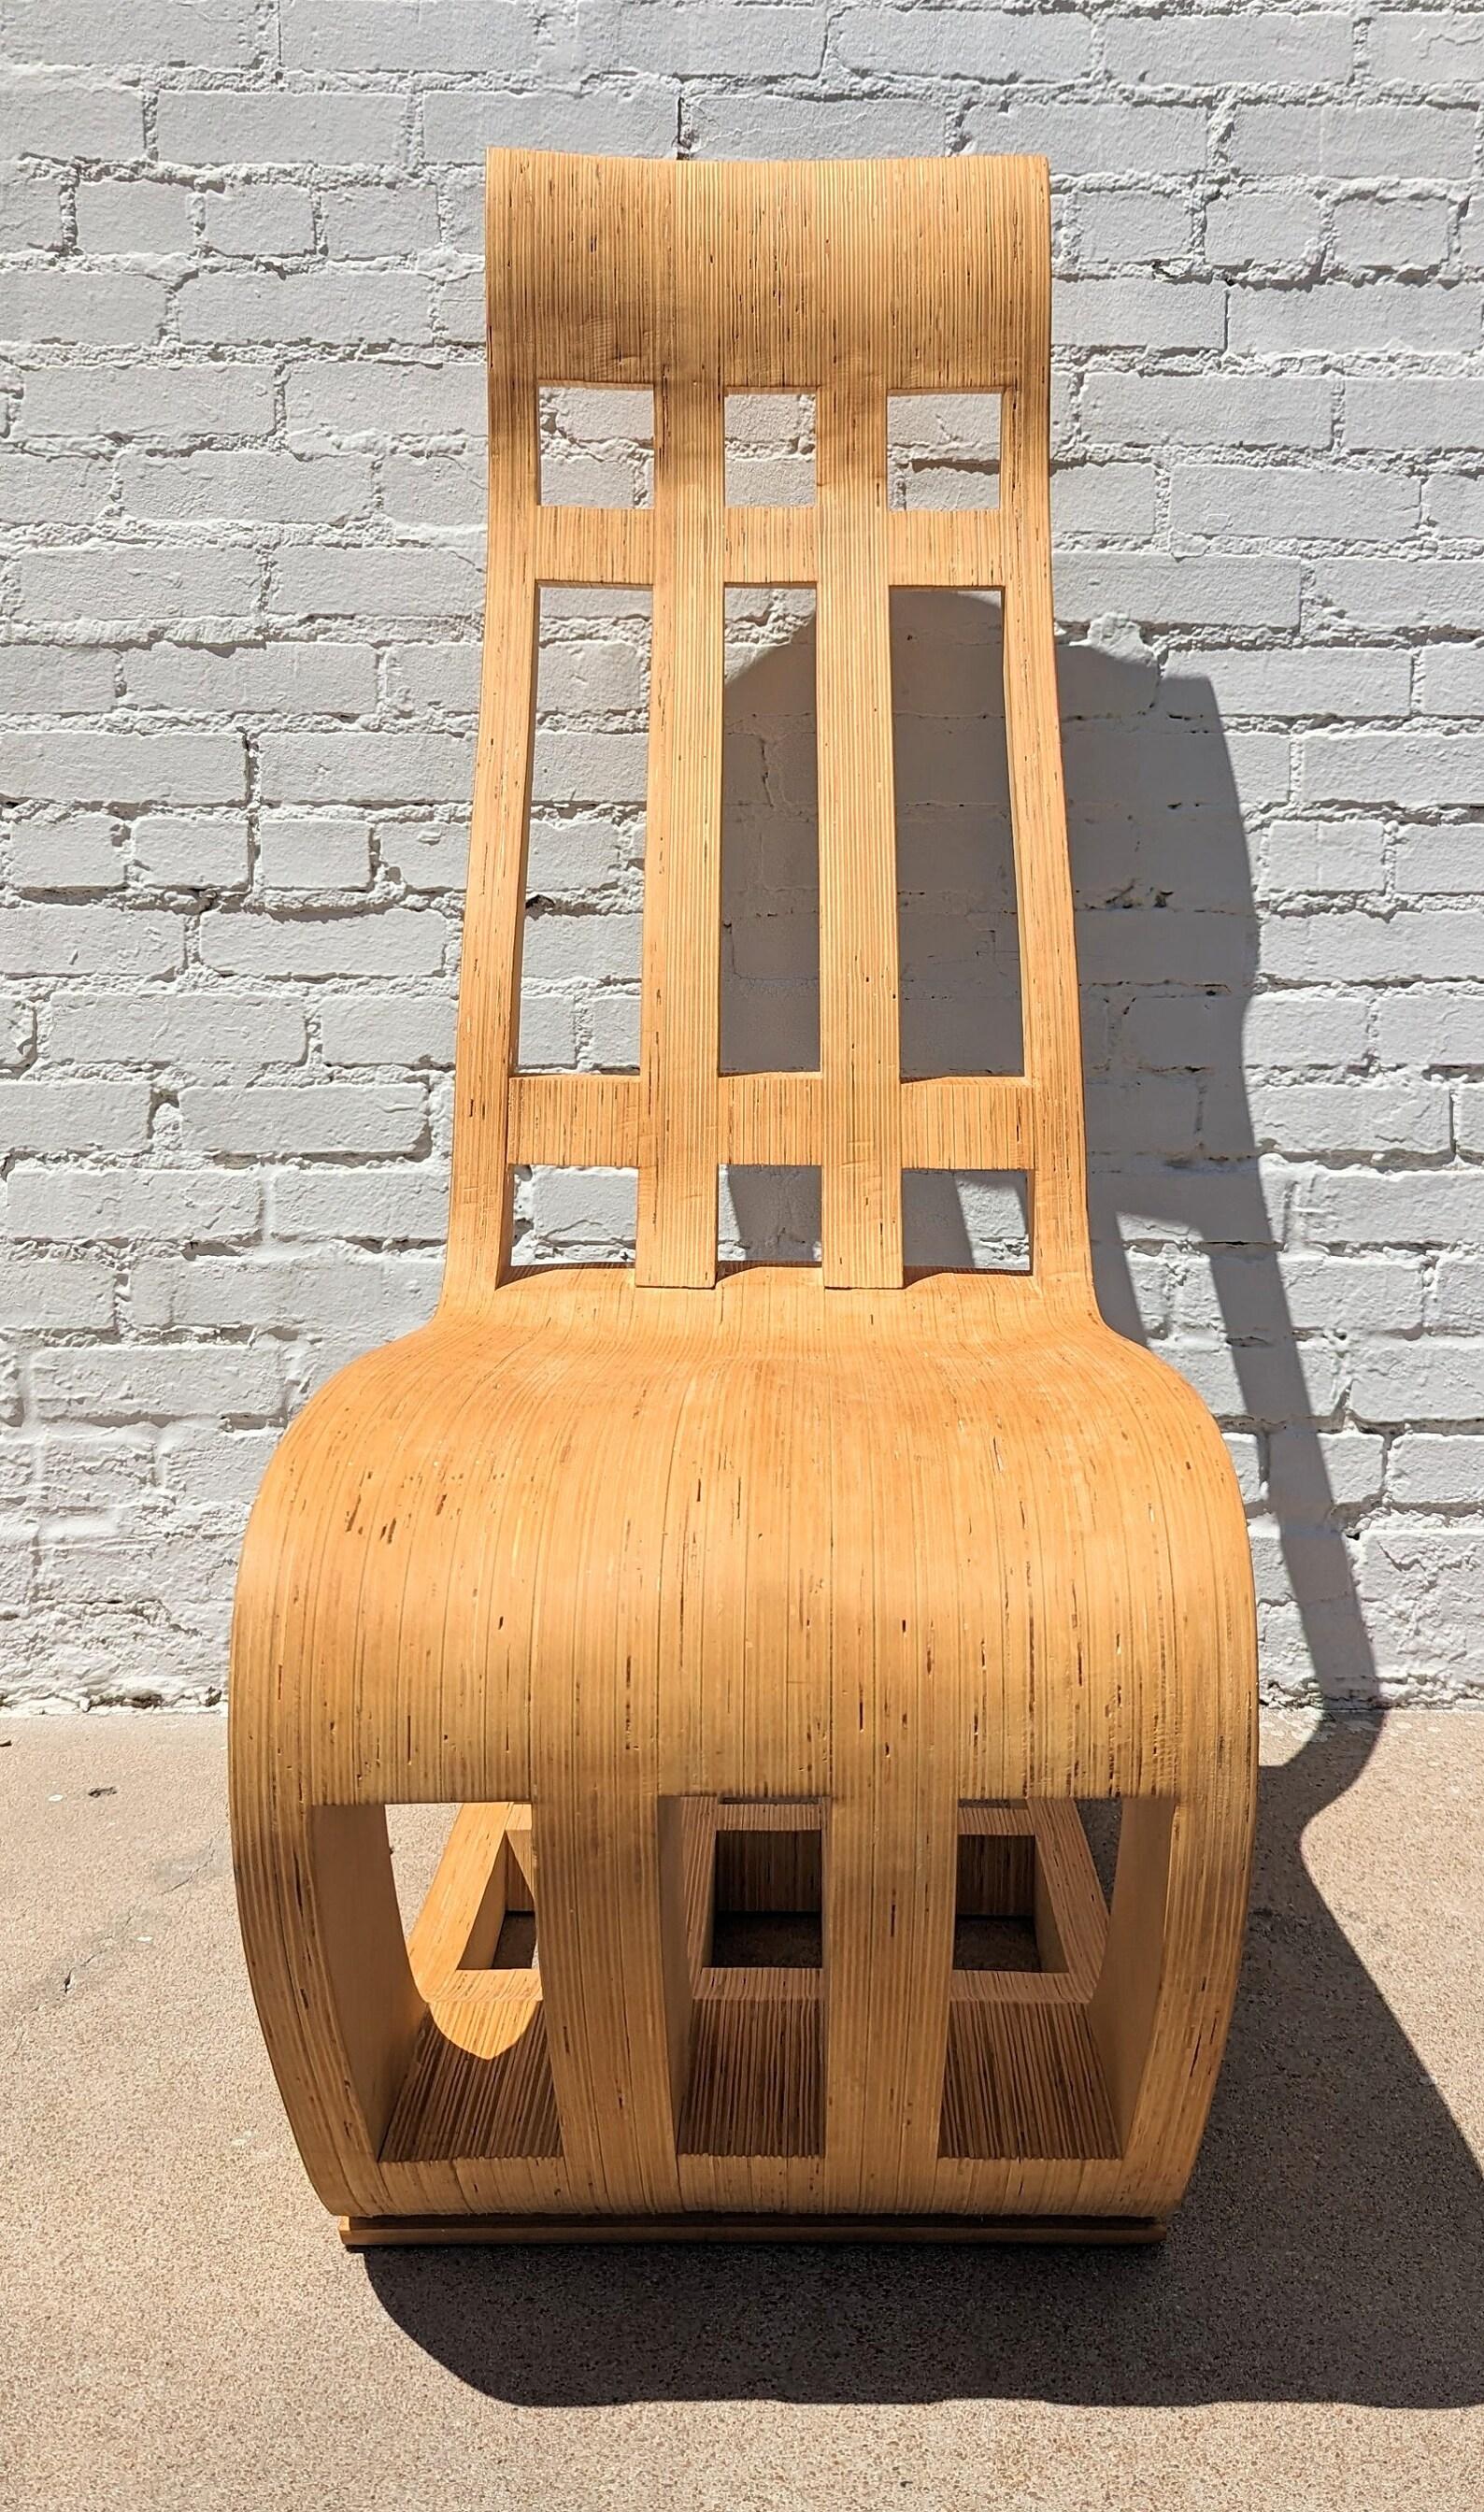 Chaise en bois courbé de style The Modernity, construite sur mesure

Très lourd et bien fait. Ce n'est pas la chaise la plus confortable, mais elle n'est pas conçue pour être une chaise longue, mais un objet de conversation. En général en très bon